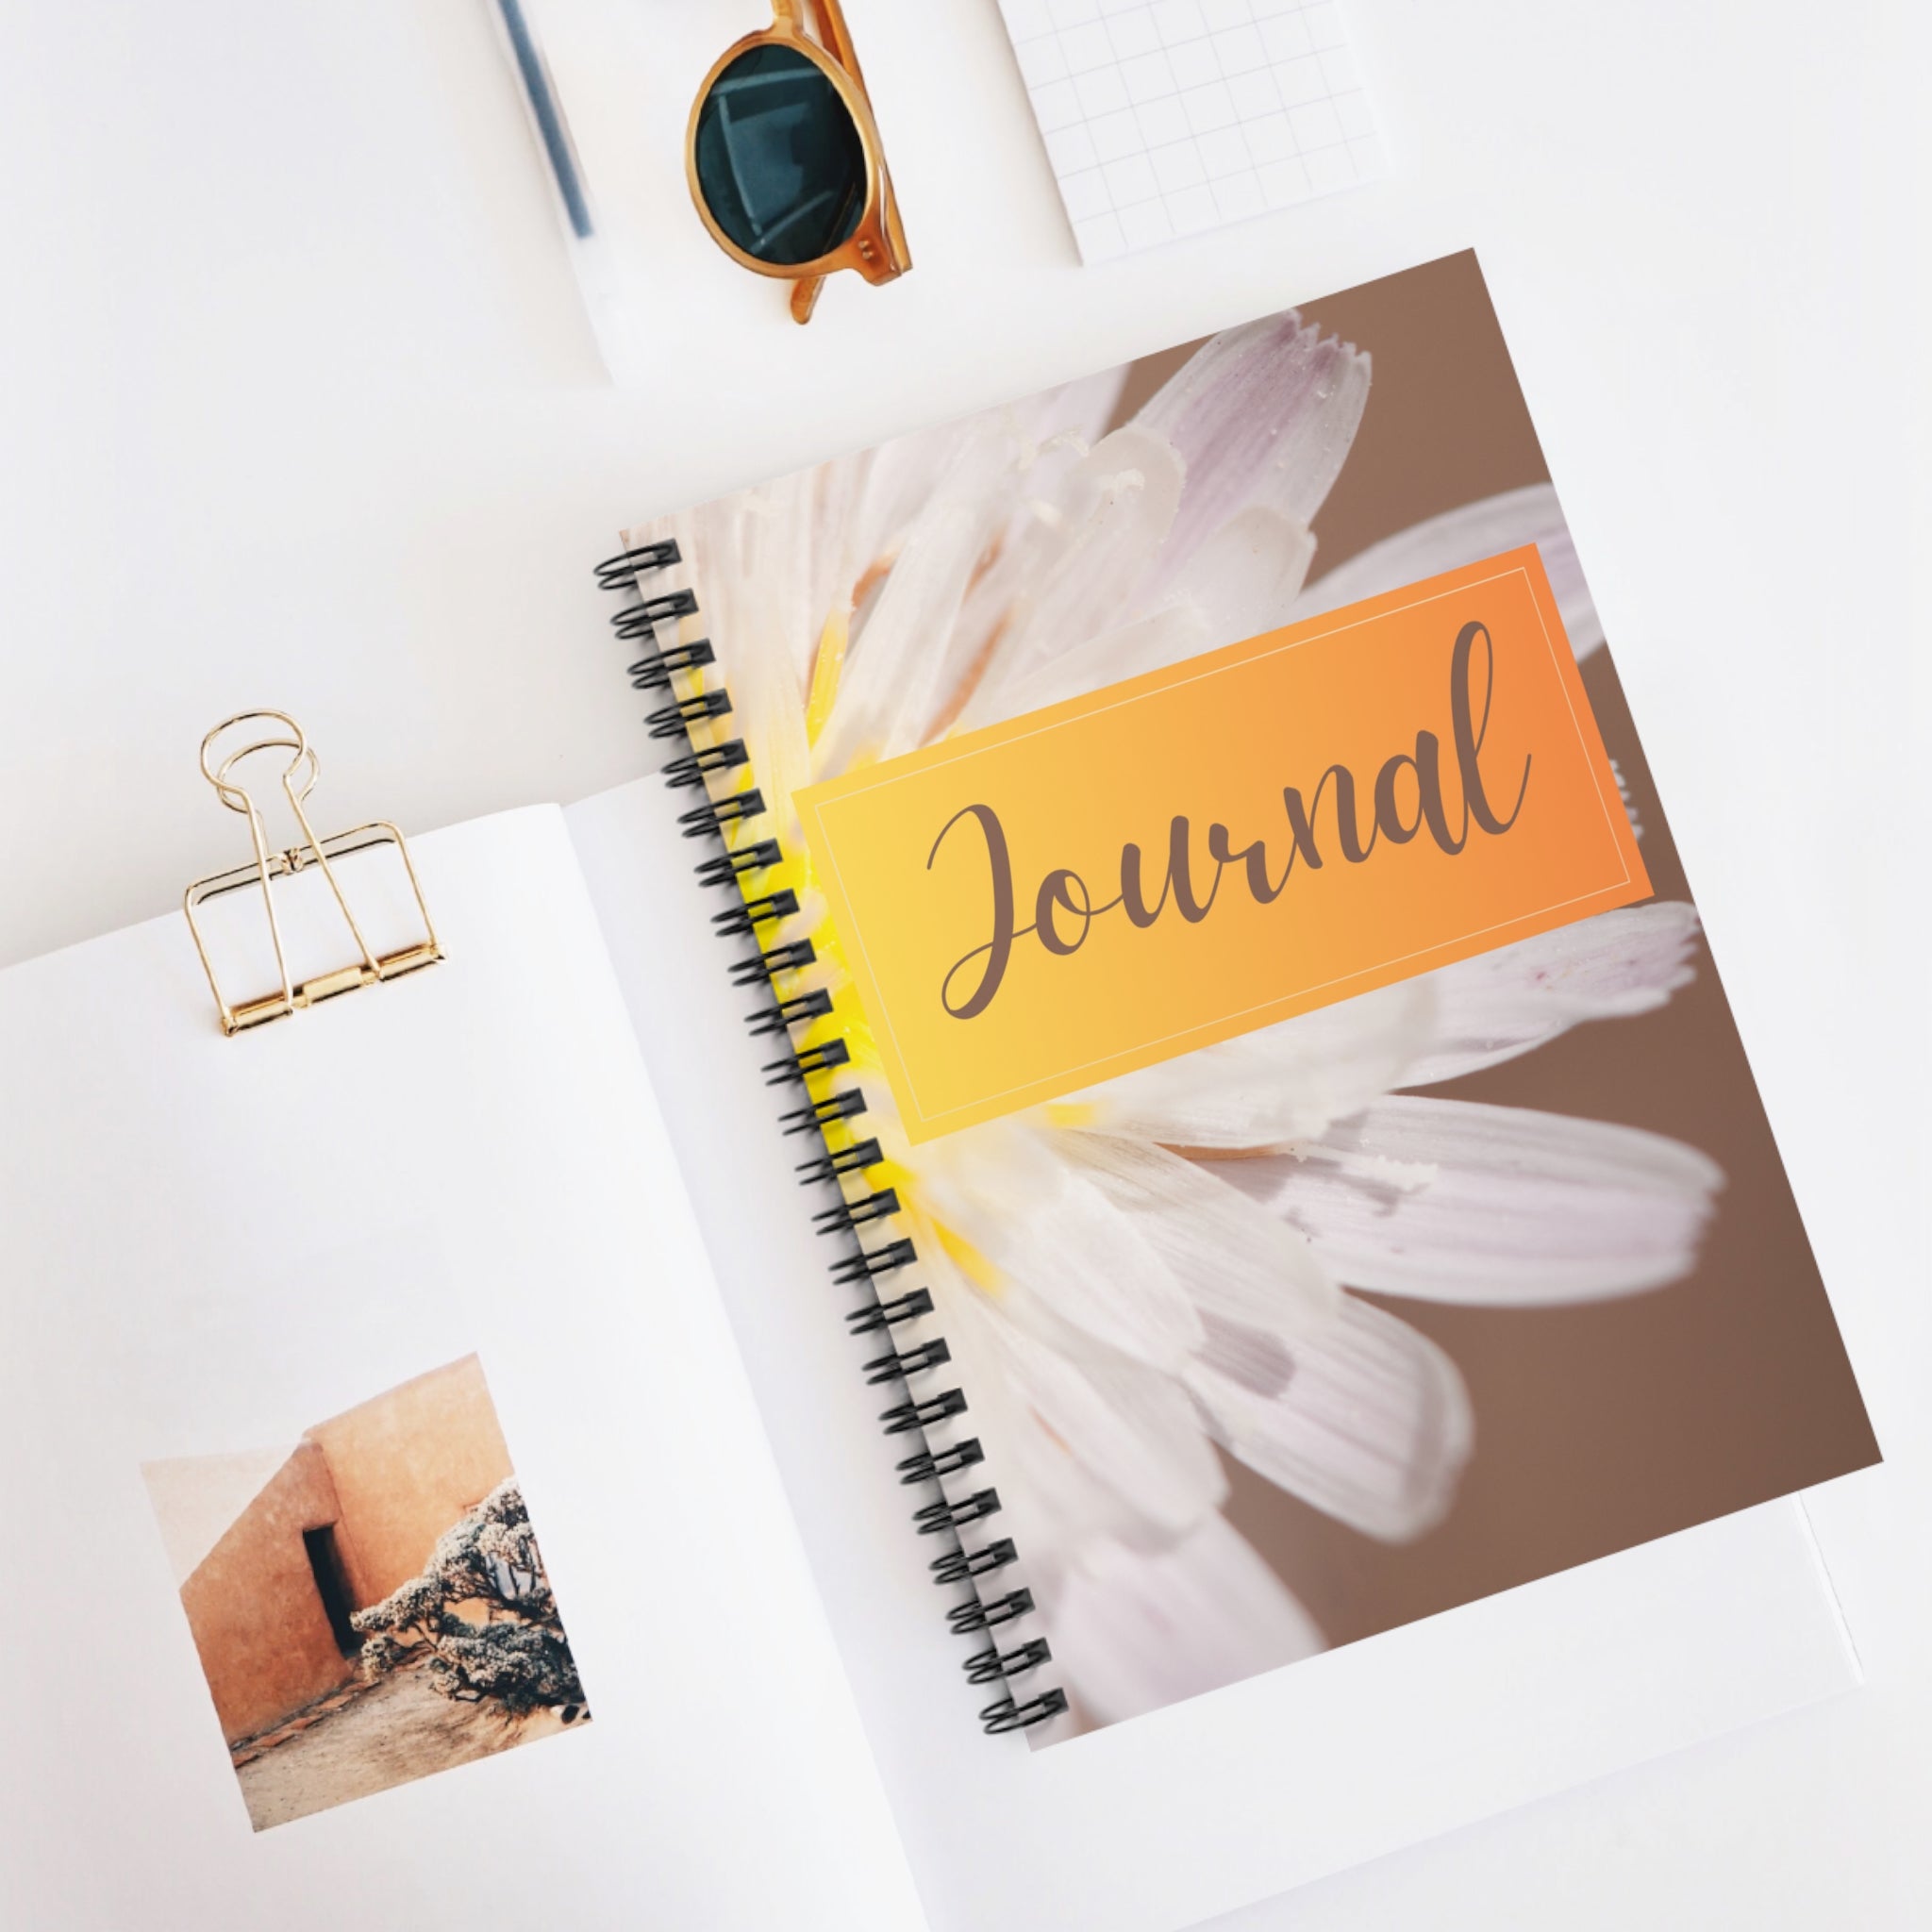 Sunflower Journal Spiral Notebook - Ruled Line